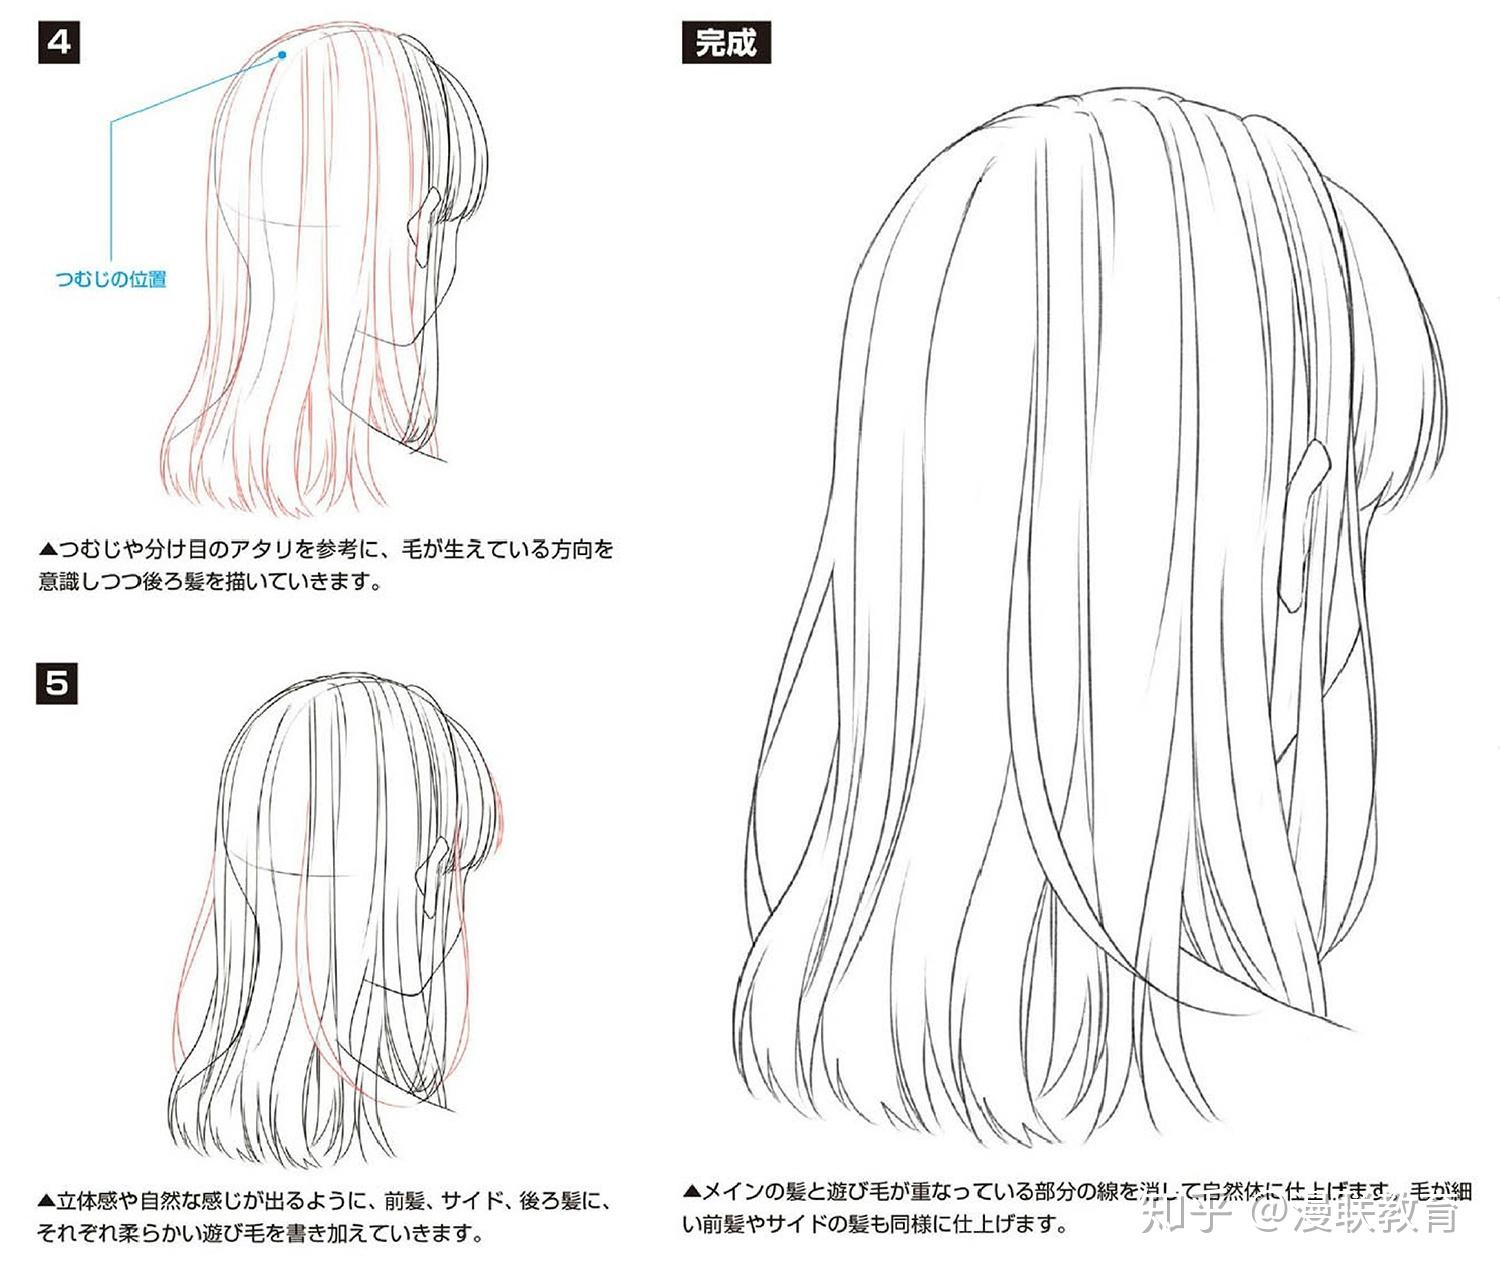 日式动漫风发型参考素材 - 优动漫 动漫创作支援平台